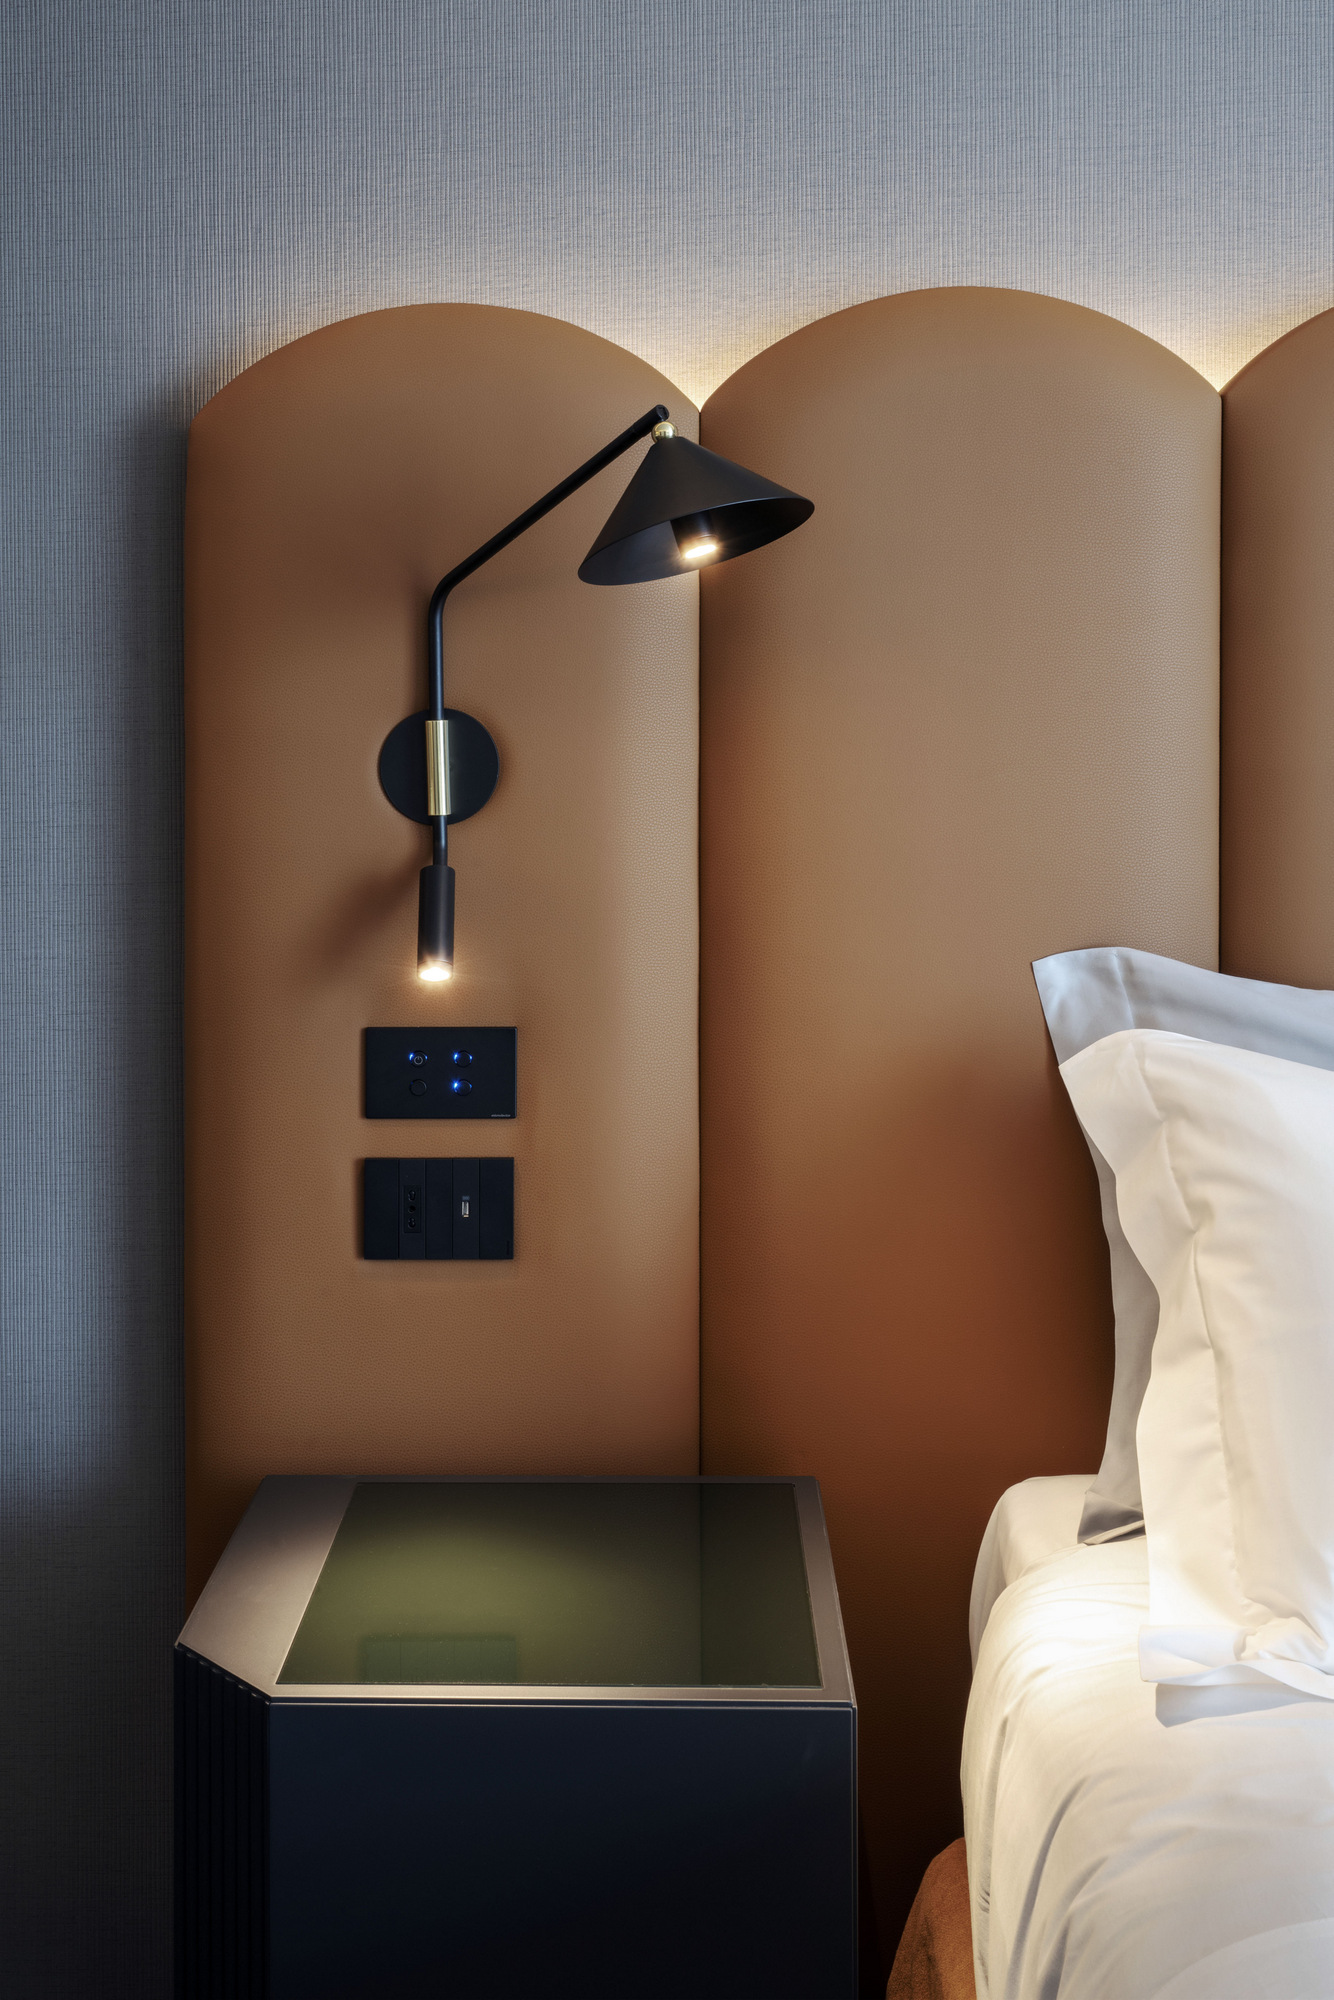 图片[28]|拉套房酒店马特拉|ART-Arrakis | 建筑室内设计的创新与灵感